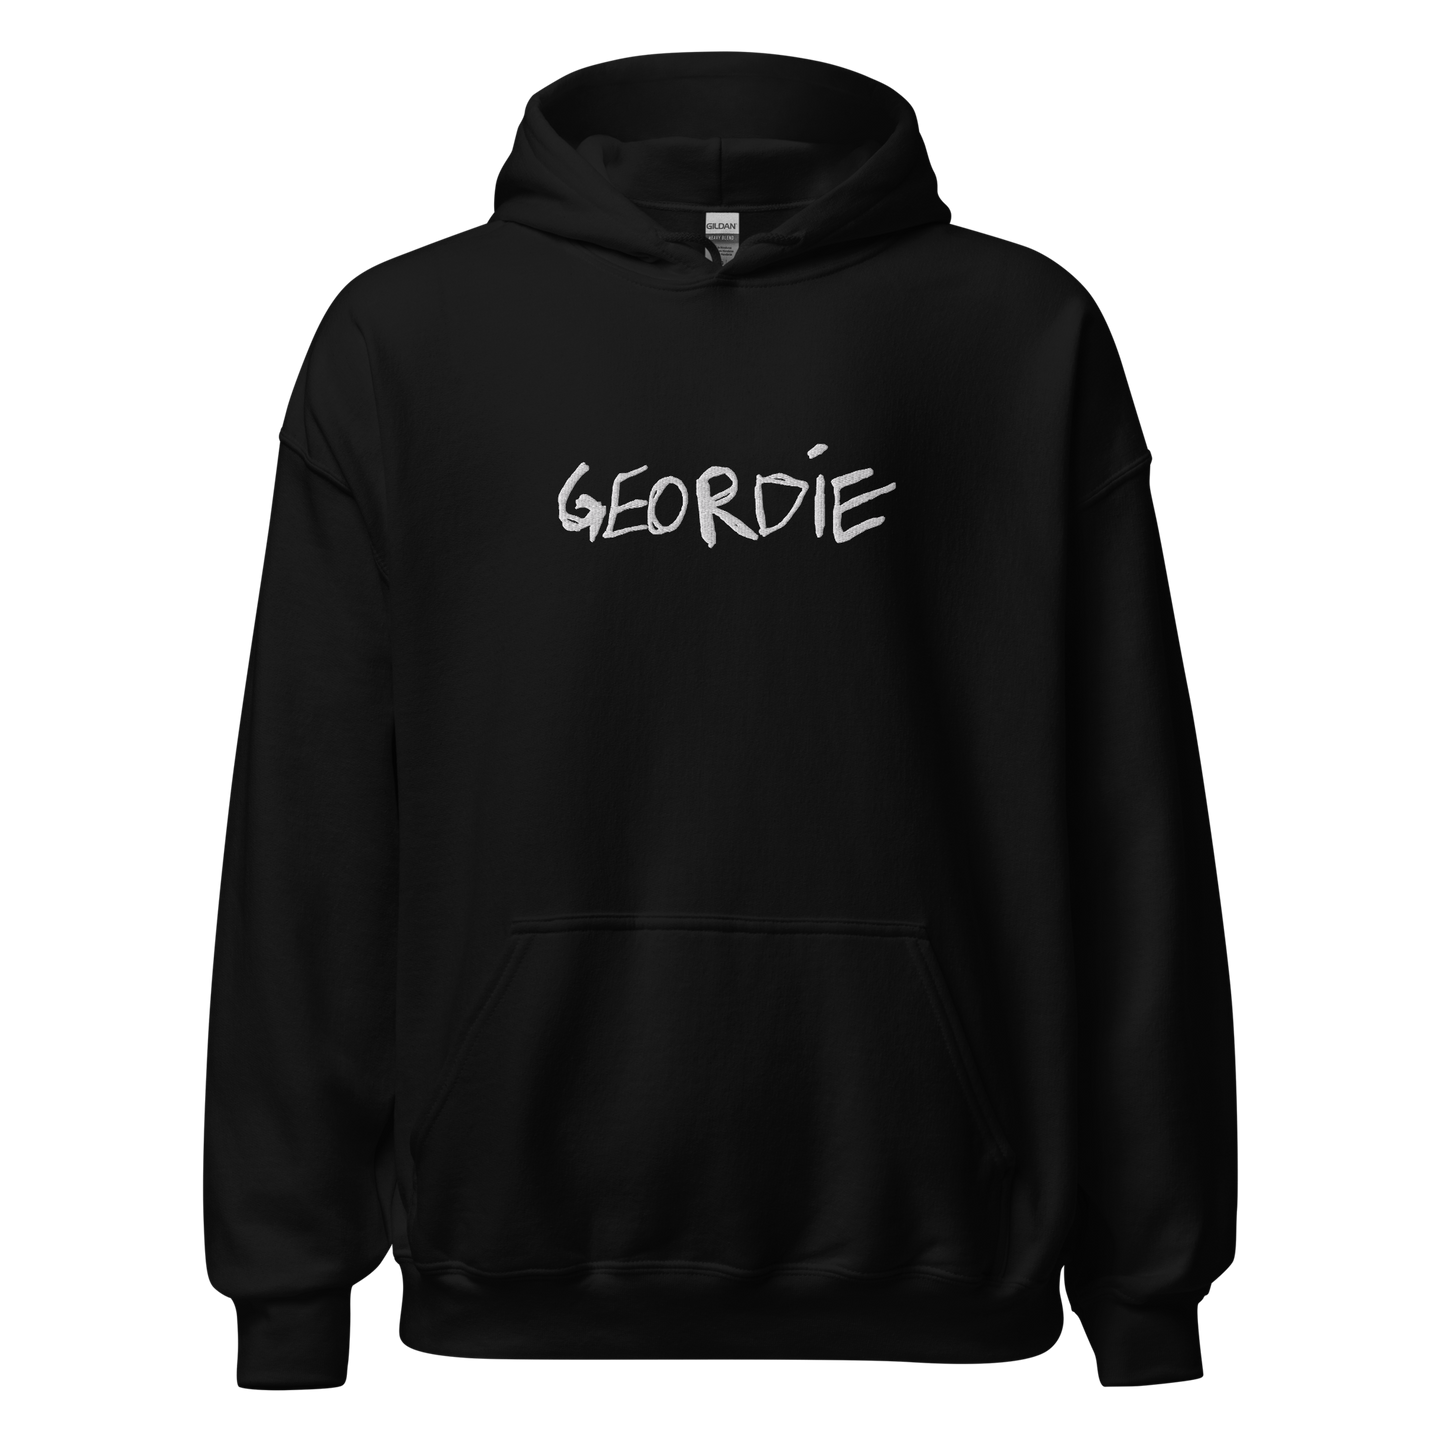 Limited Edition Black Geordie Hoodie